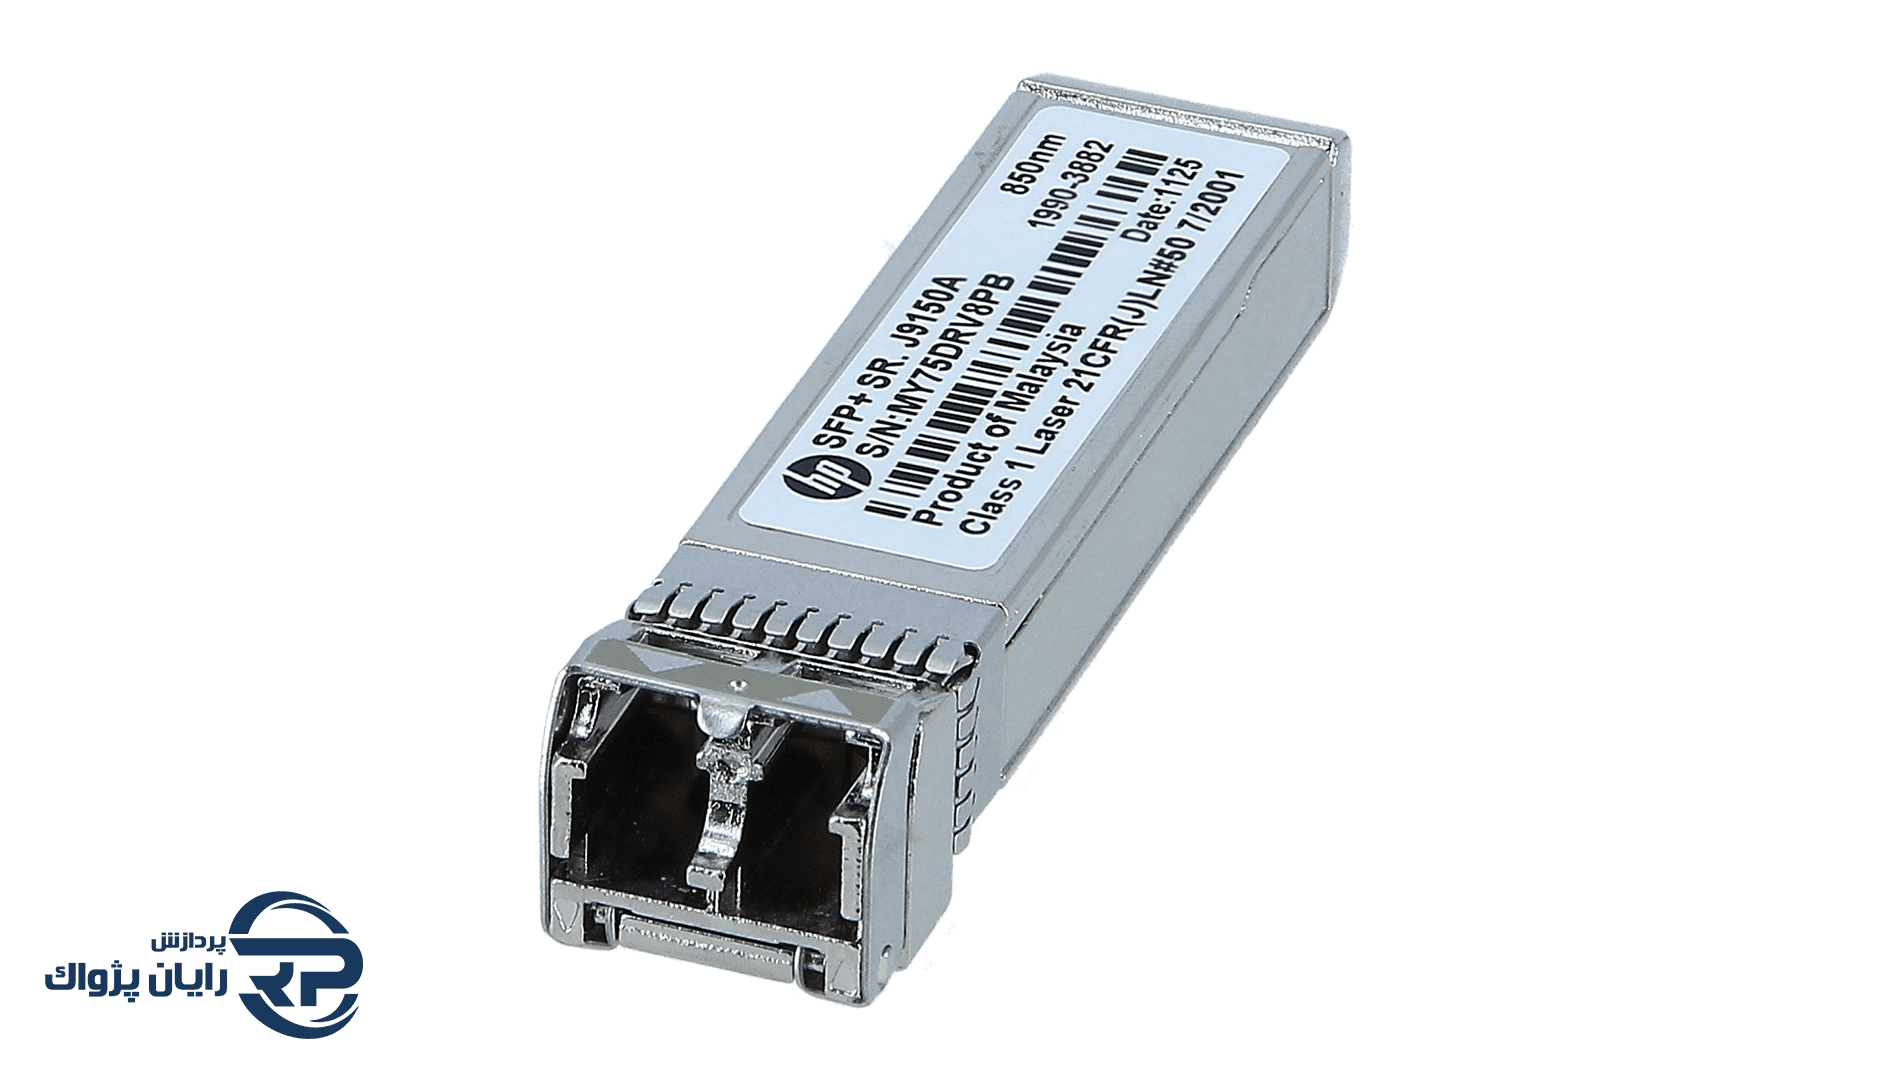 ماژول فیبر نوری HPE J9150A X132 10GB LC SR SFP+Transceiver